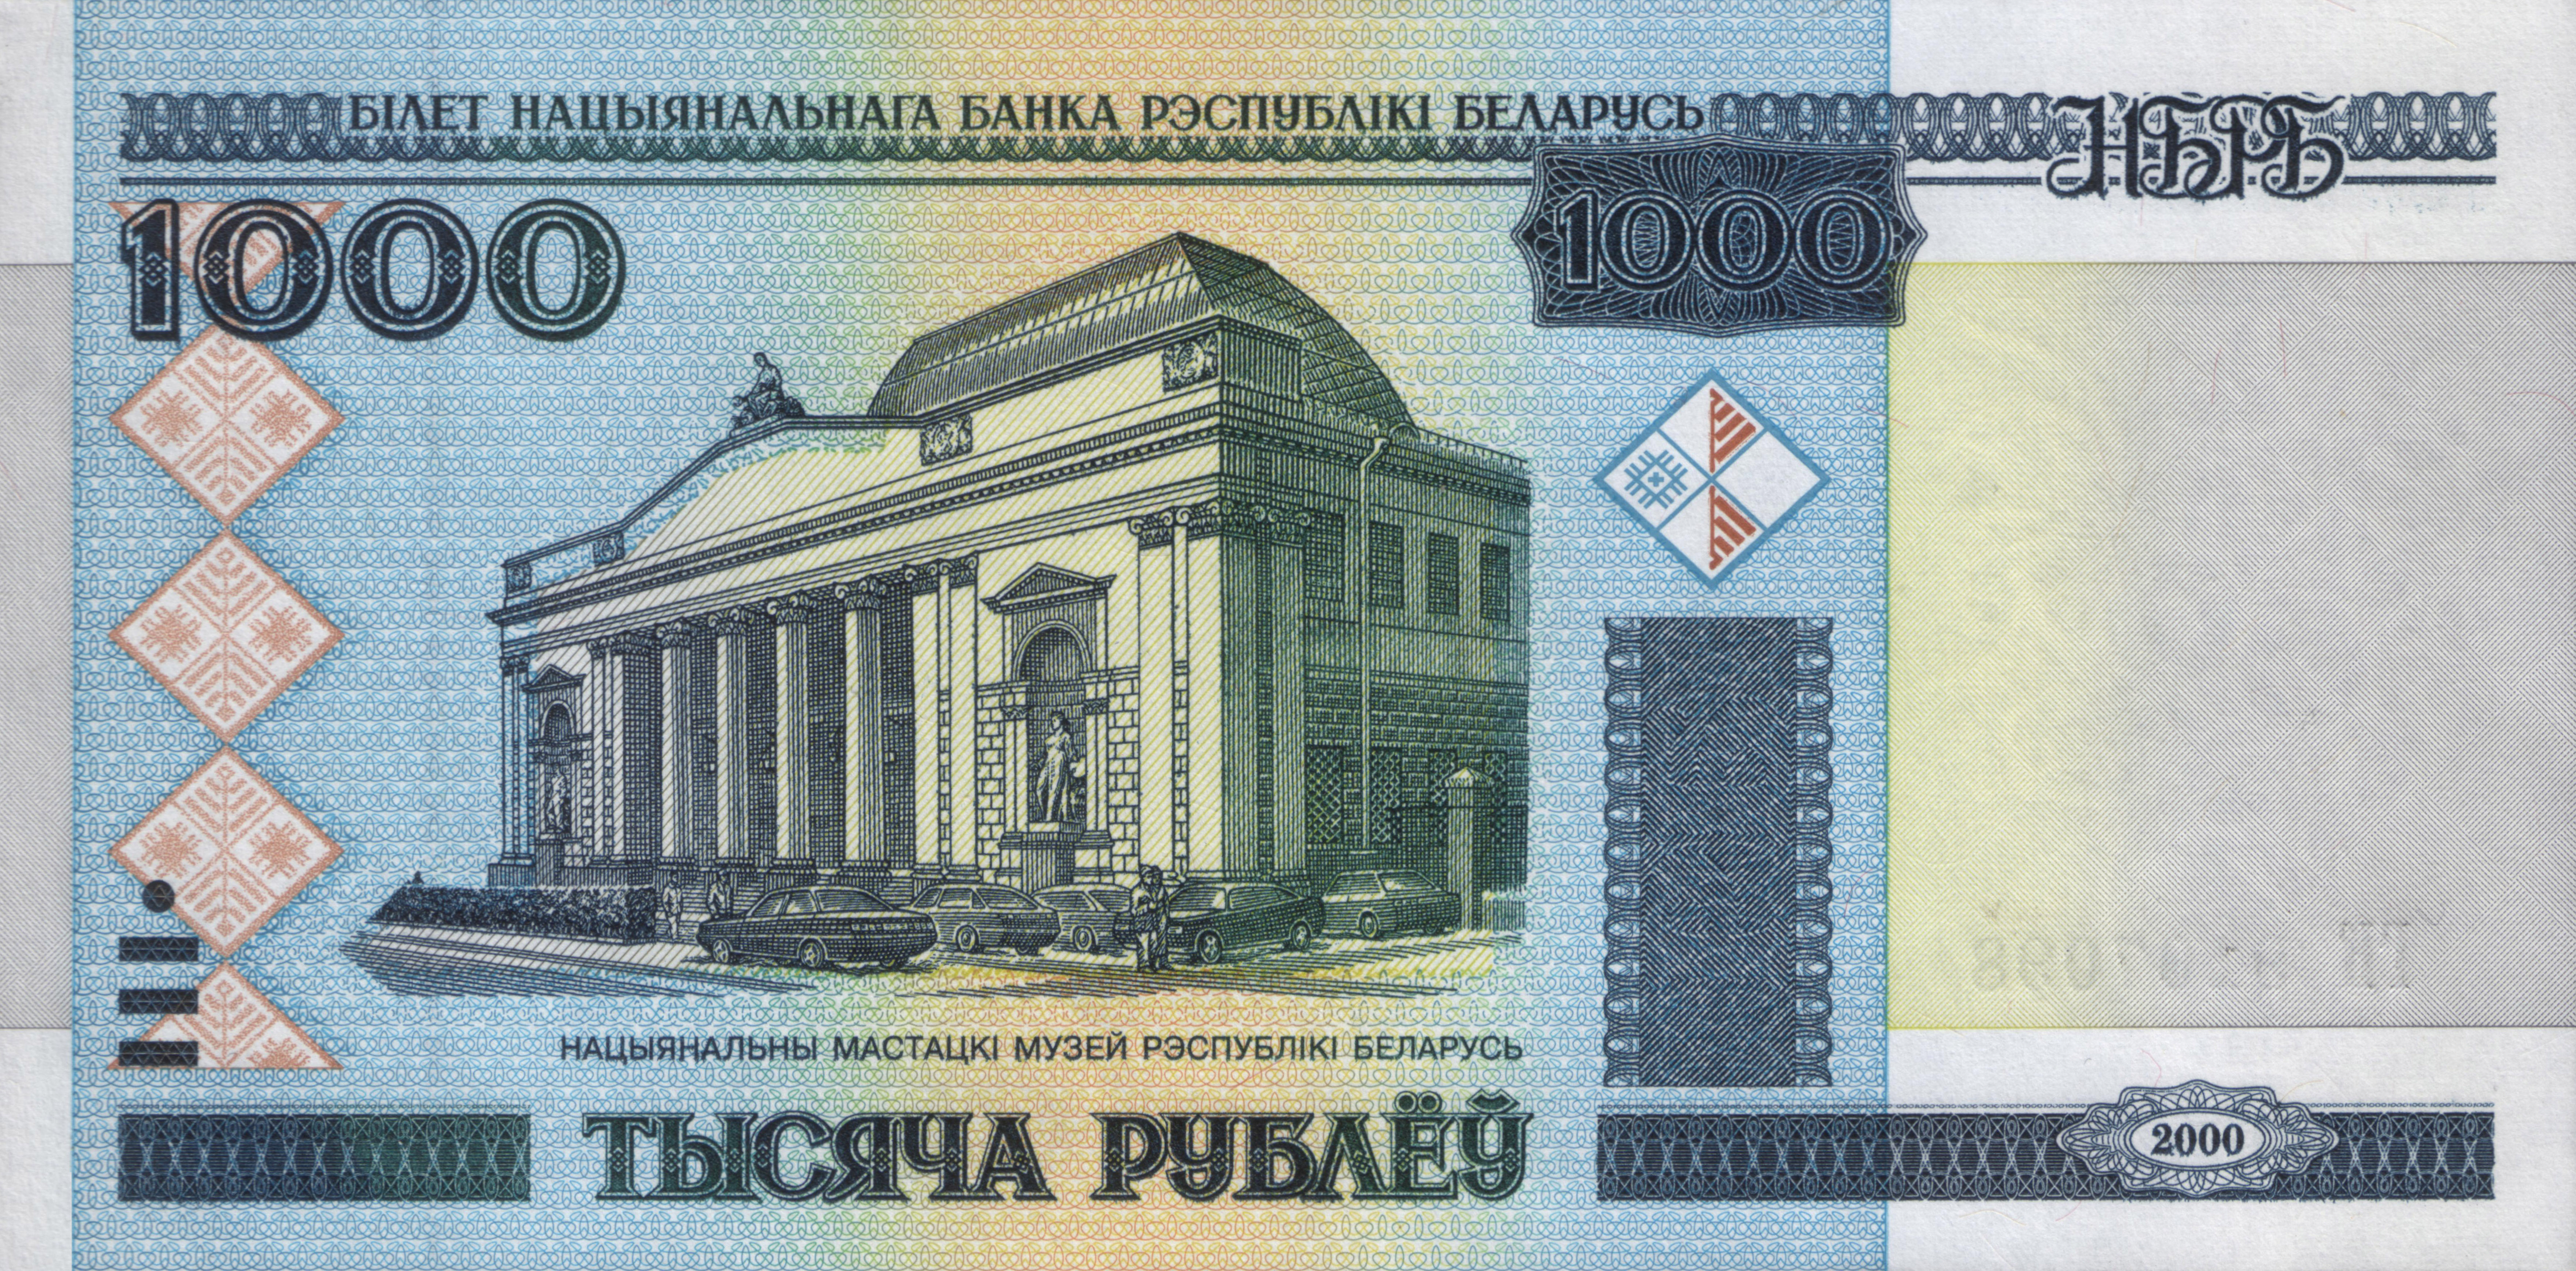 File:1000-rubles-Belarus-2000-f.jpg - Wikimedia Commons